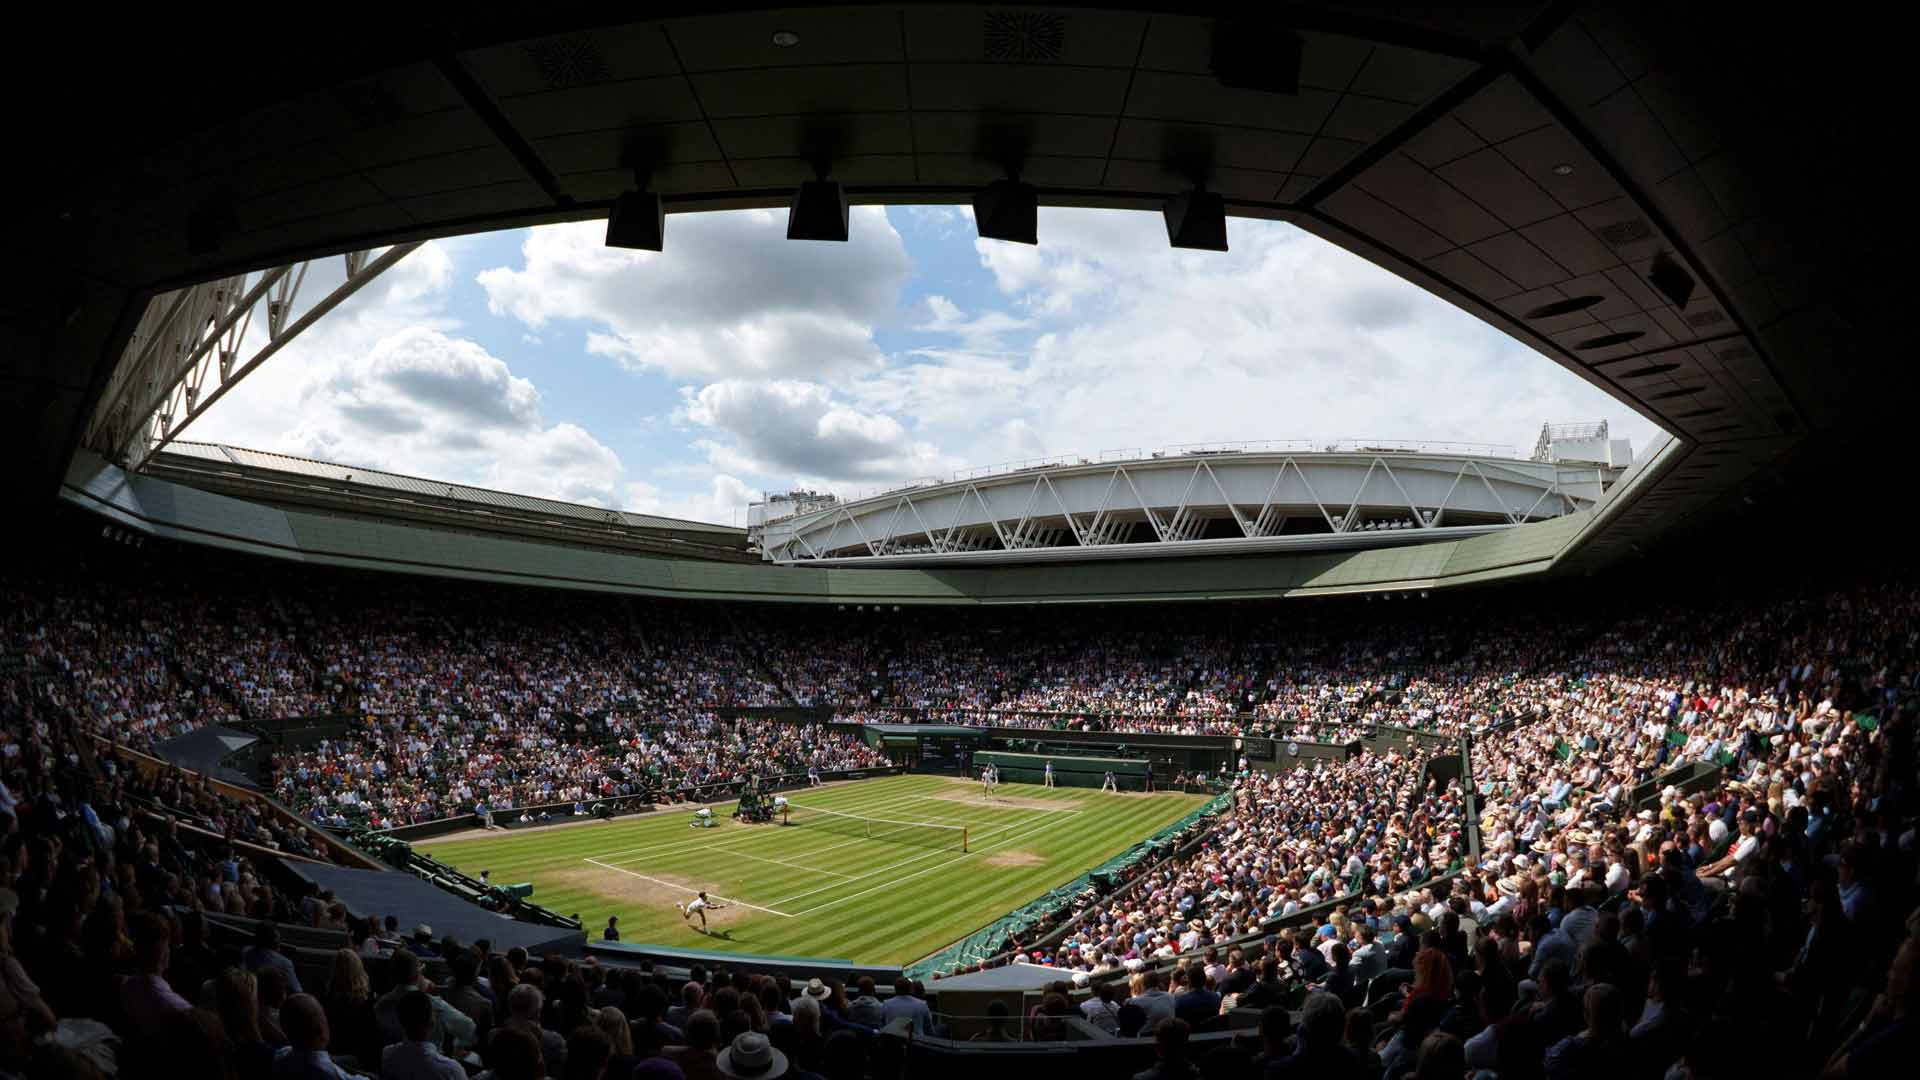 voorspelling Karakteriseren Van Wimbledon | Overview | ATP Tour | Tennis